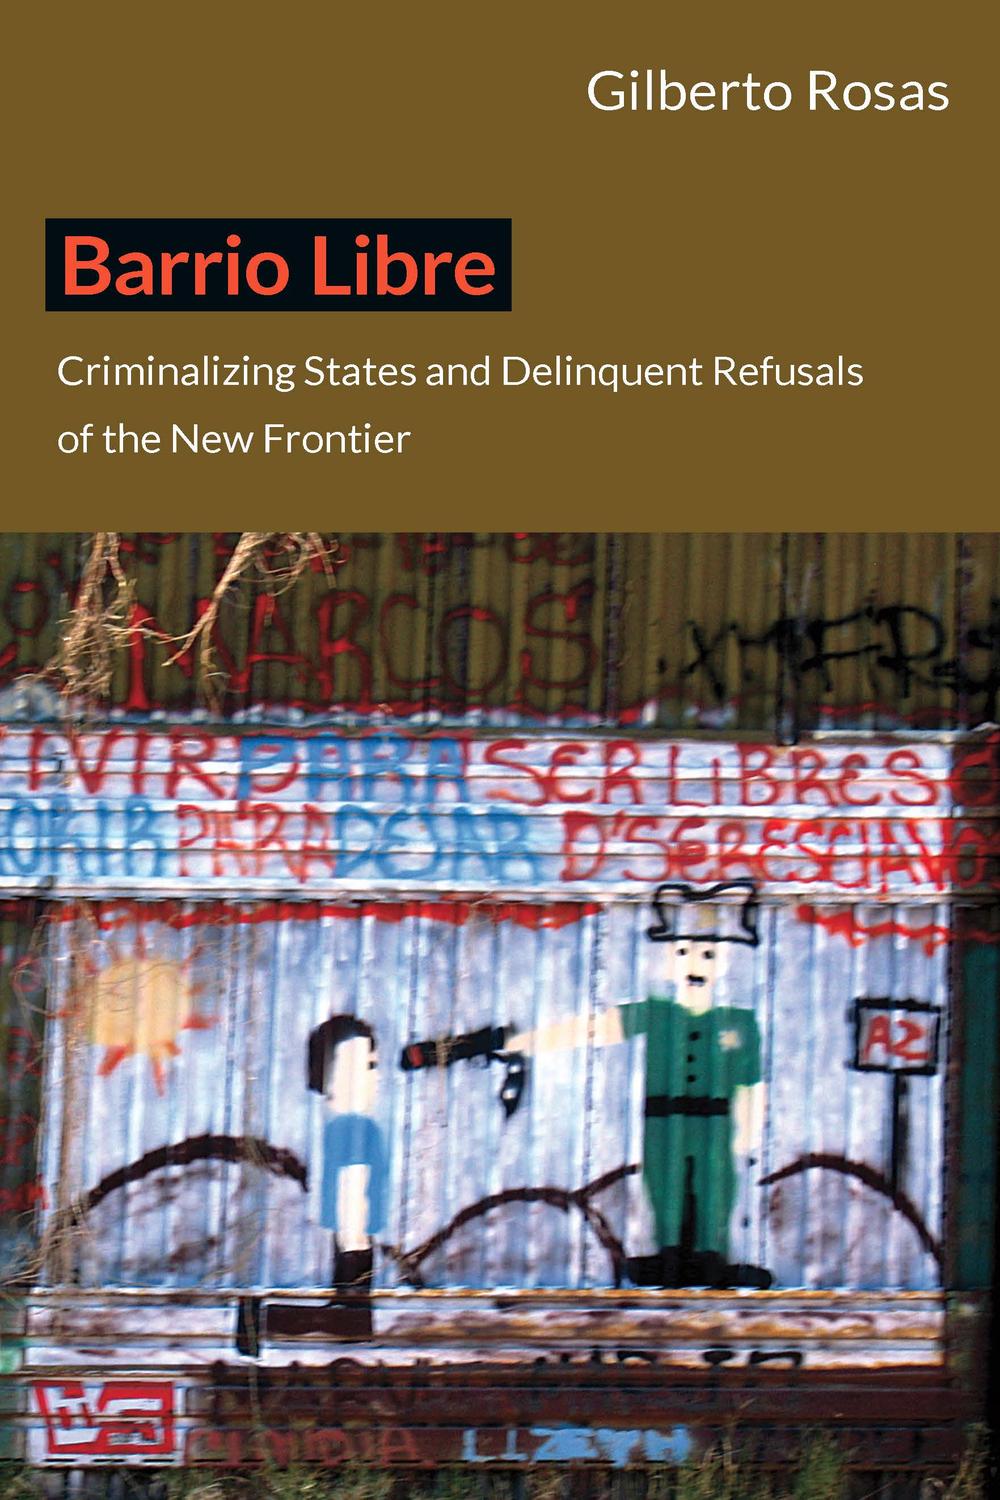 Barrio Libre - Gilberto Rosas